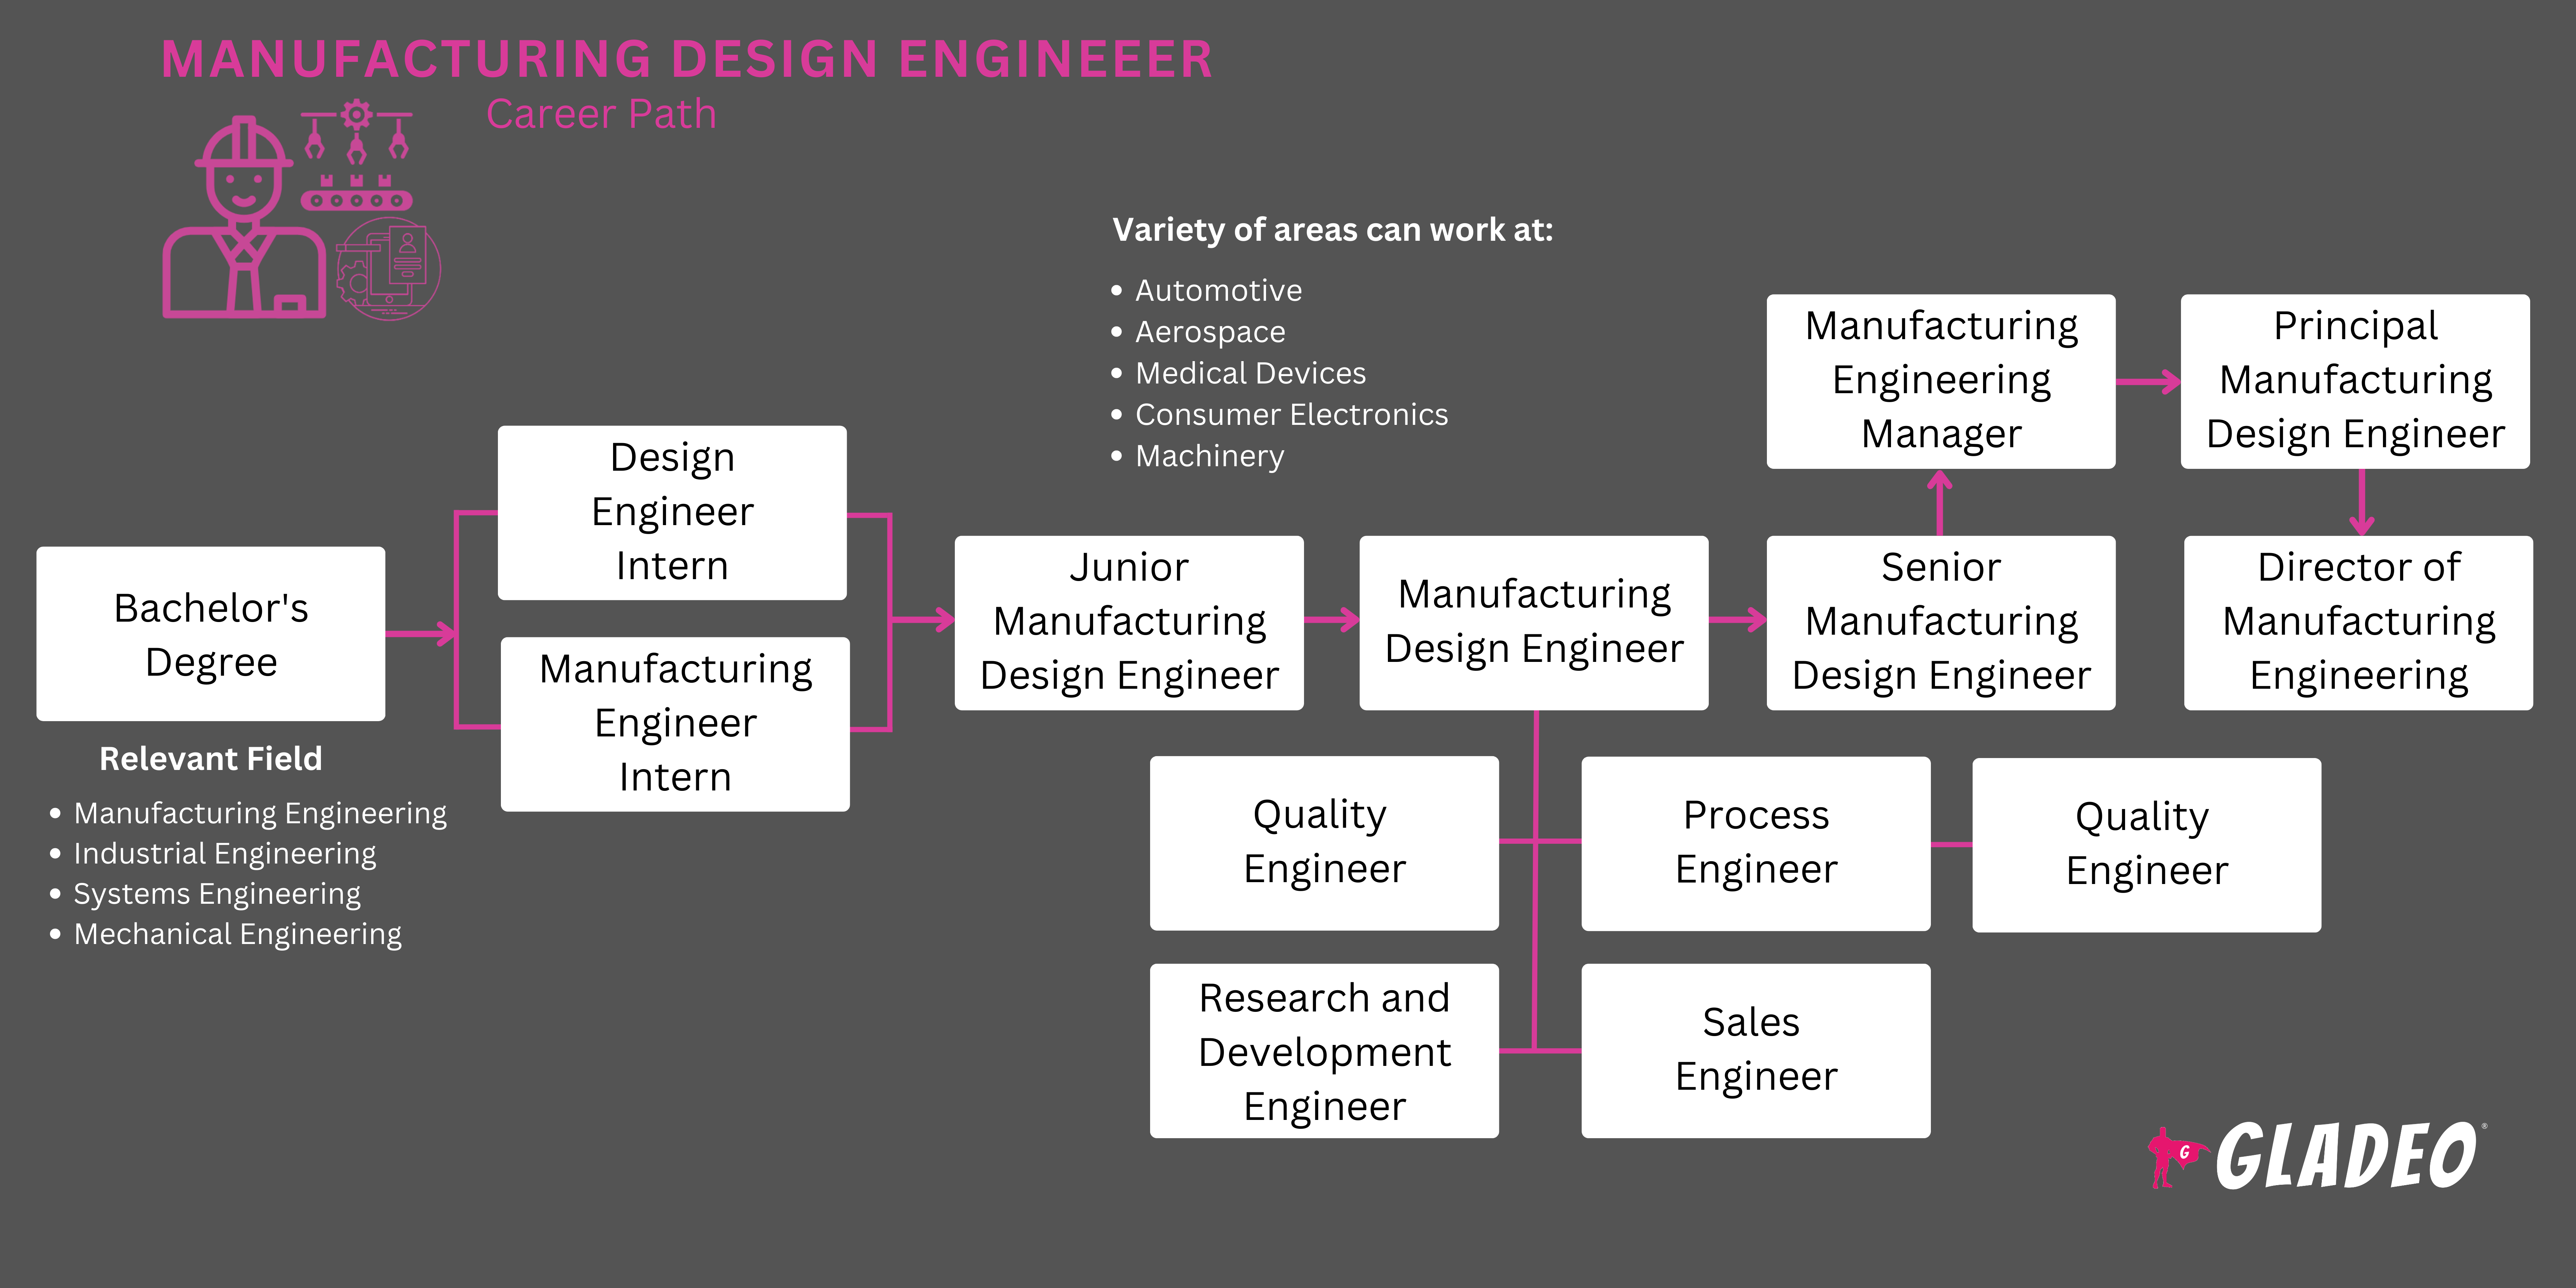 제조 설계 엔지니어 로드맵